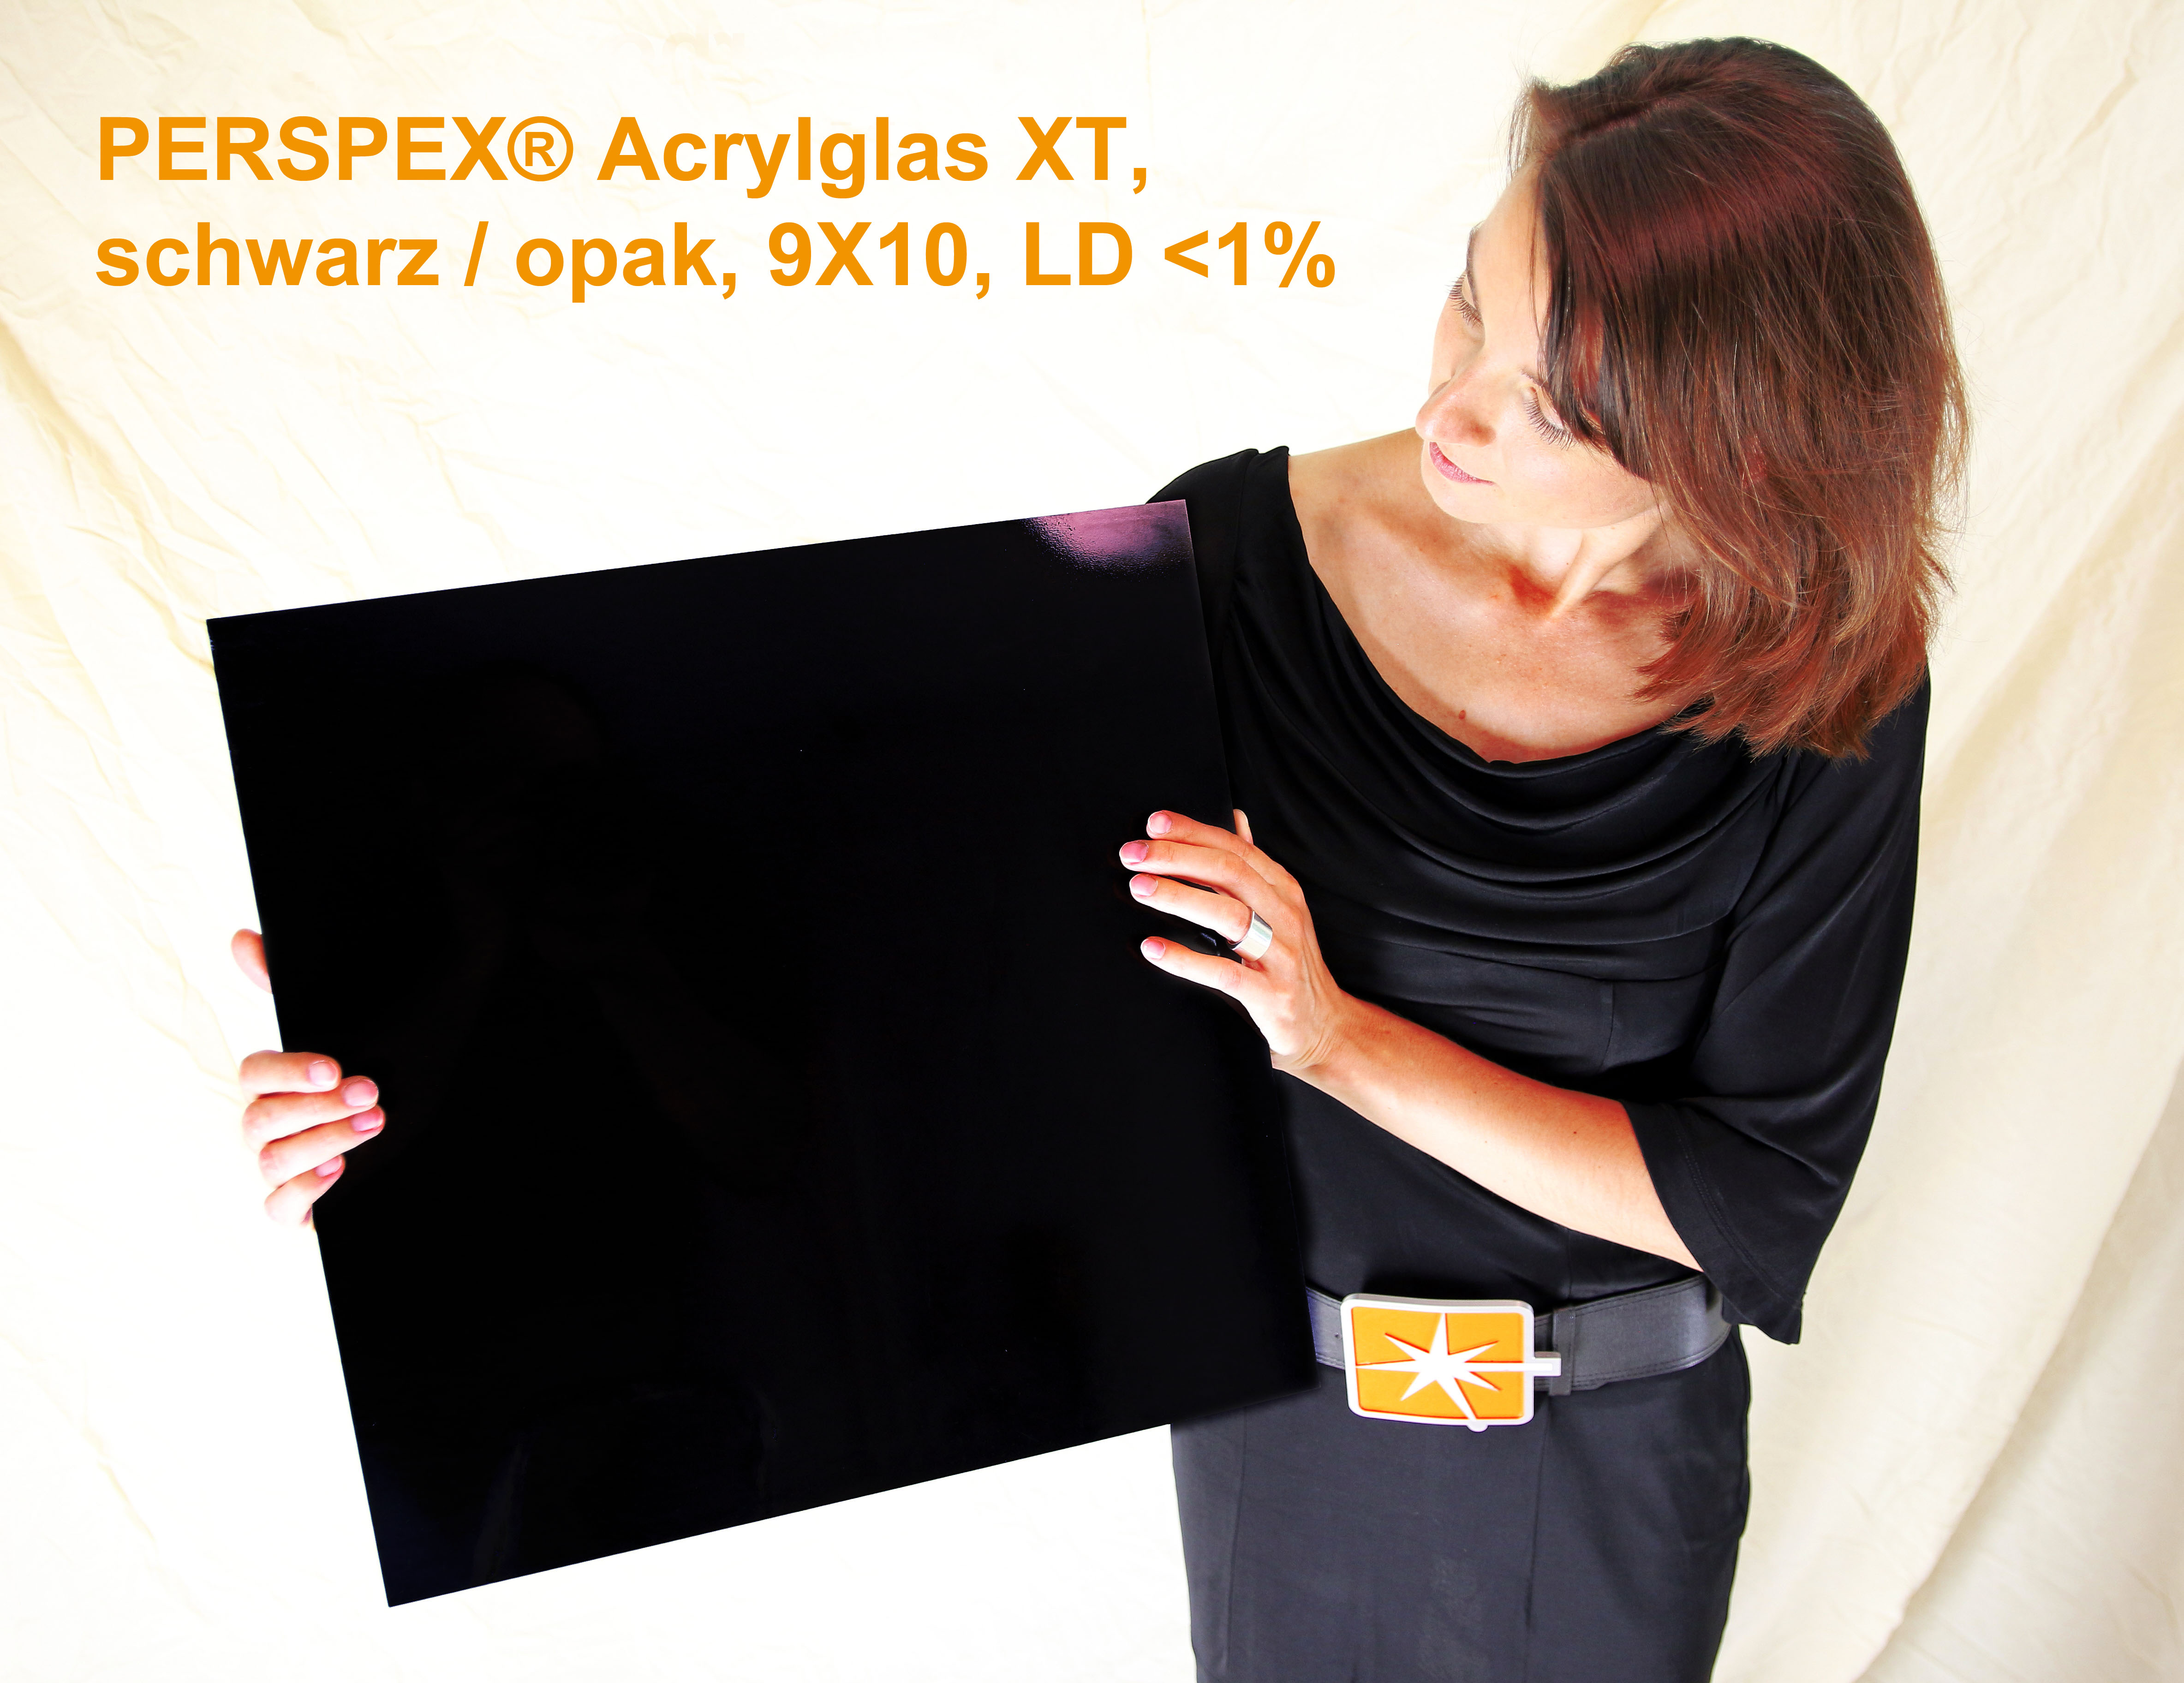 Acrylglas Perspex XT, schwarz / opak, 1520 x 2050 x 3 mm, LD < 1